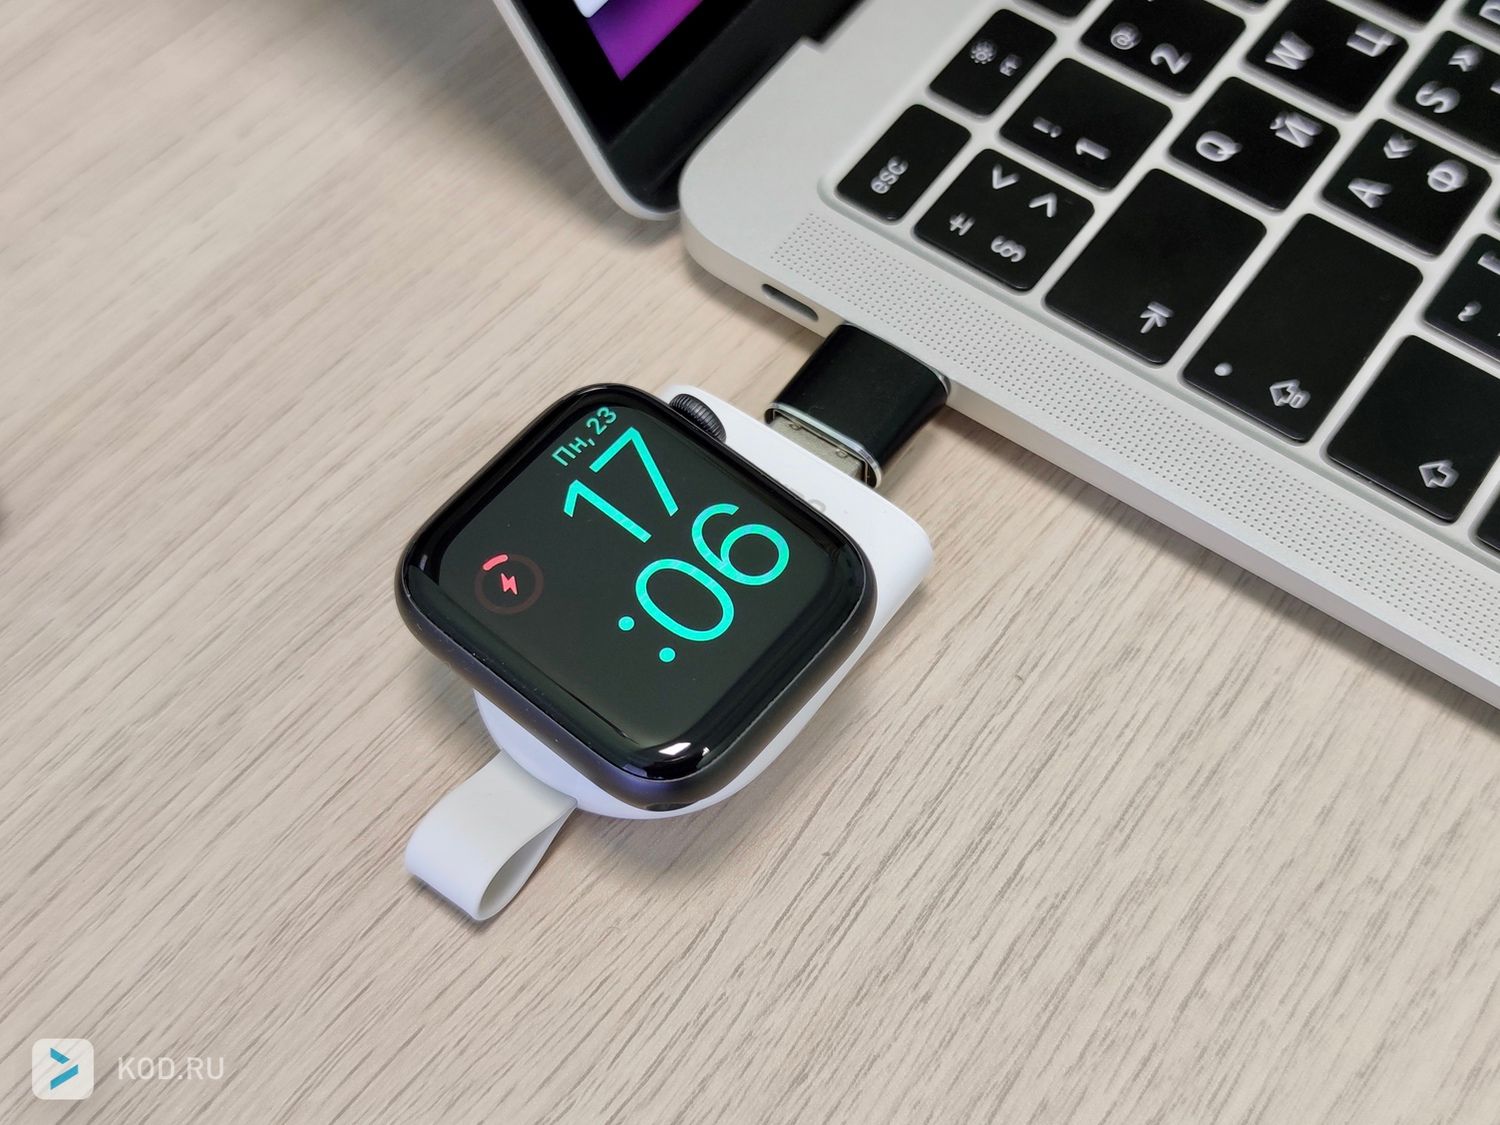 Эта удобная MFI-зарядка для Apple Watch продается тут.